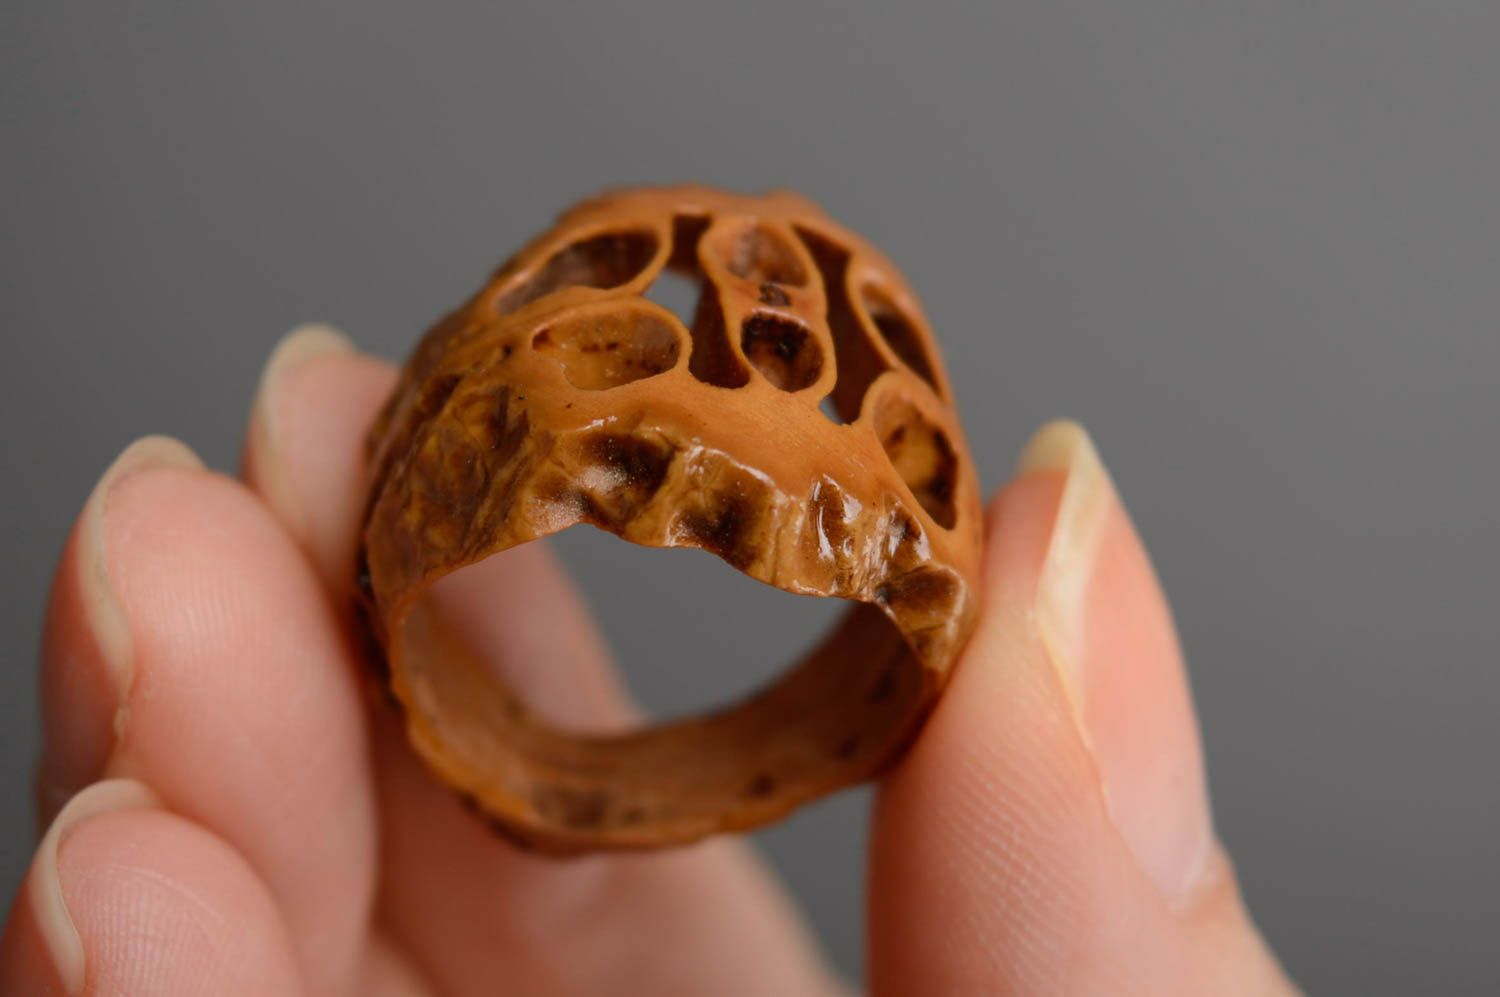 Перстень из скорлупы маньчжурского ореха 17 мм фото 3